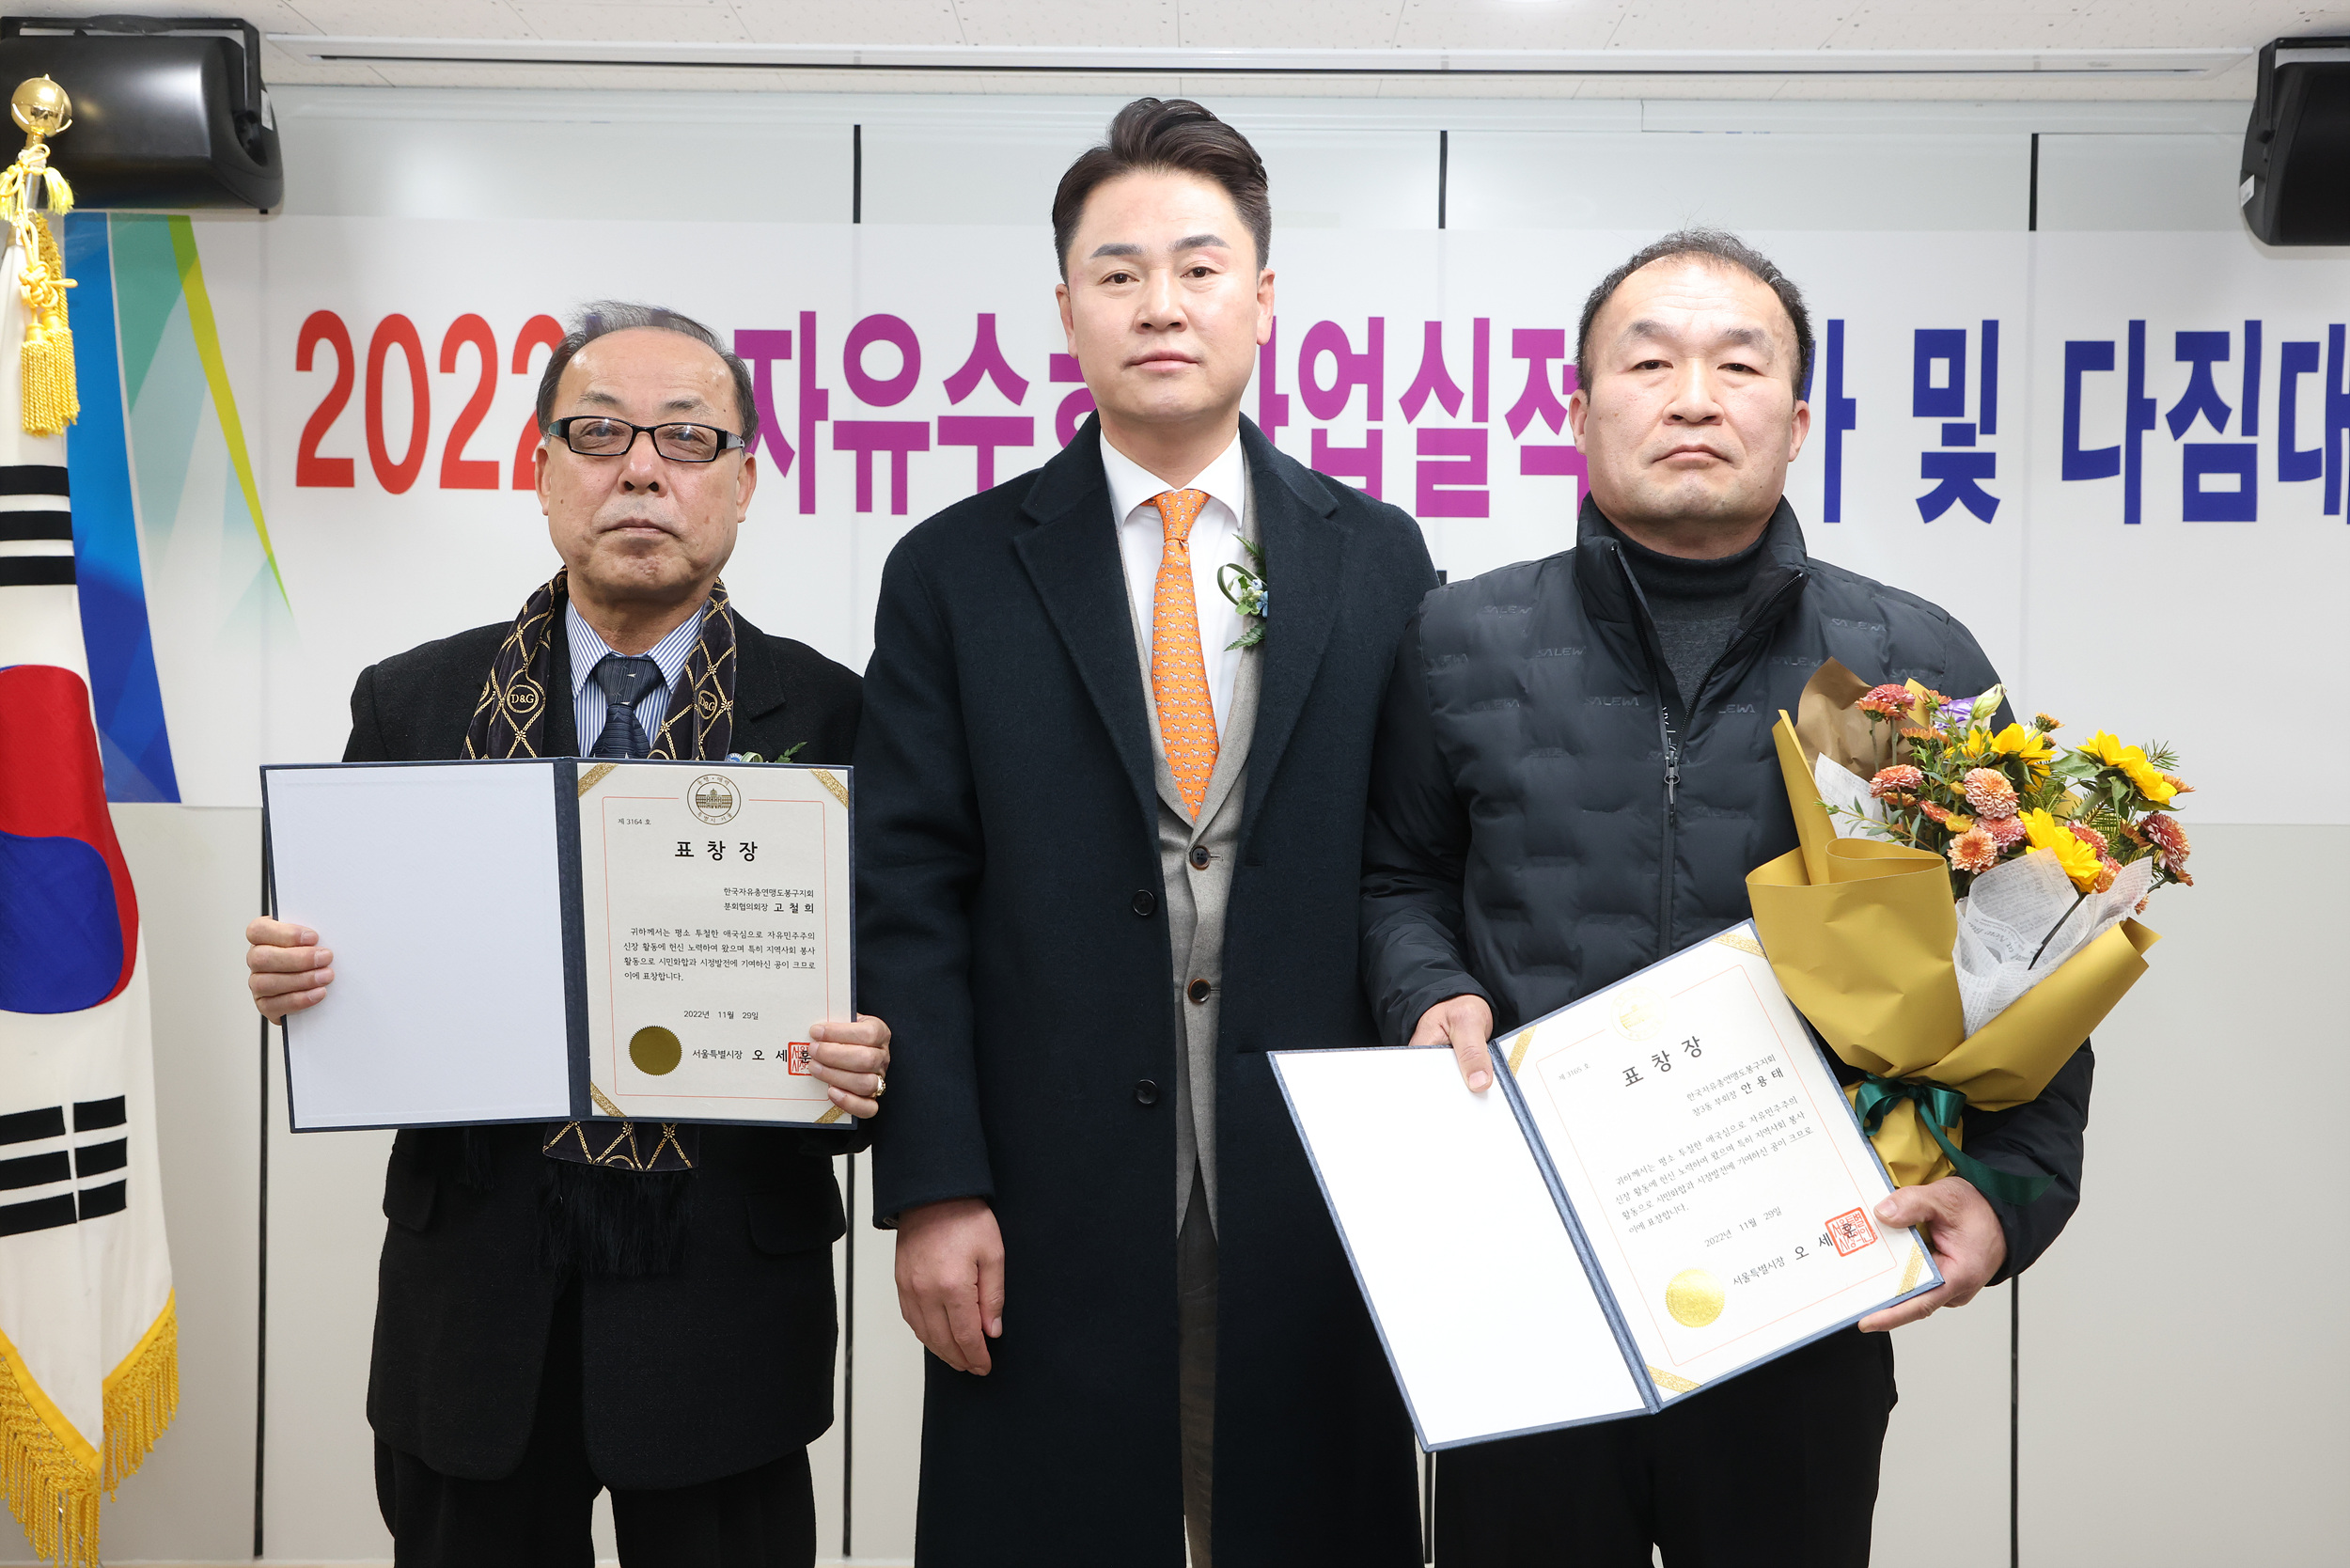 한국자유총연맹 도봉구지회 자유수호평가 다짐대회 해당 썸네일입니다